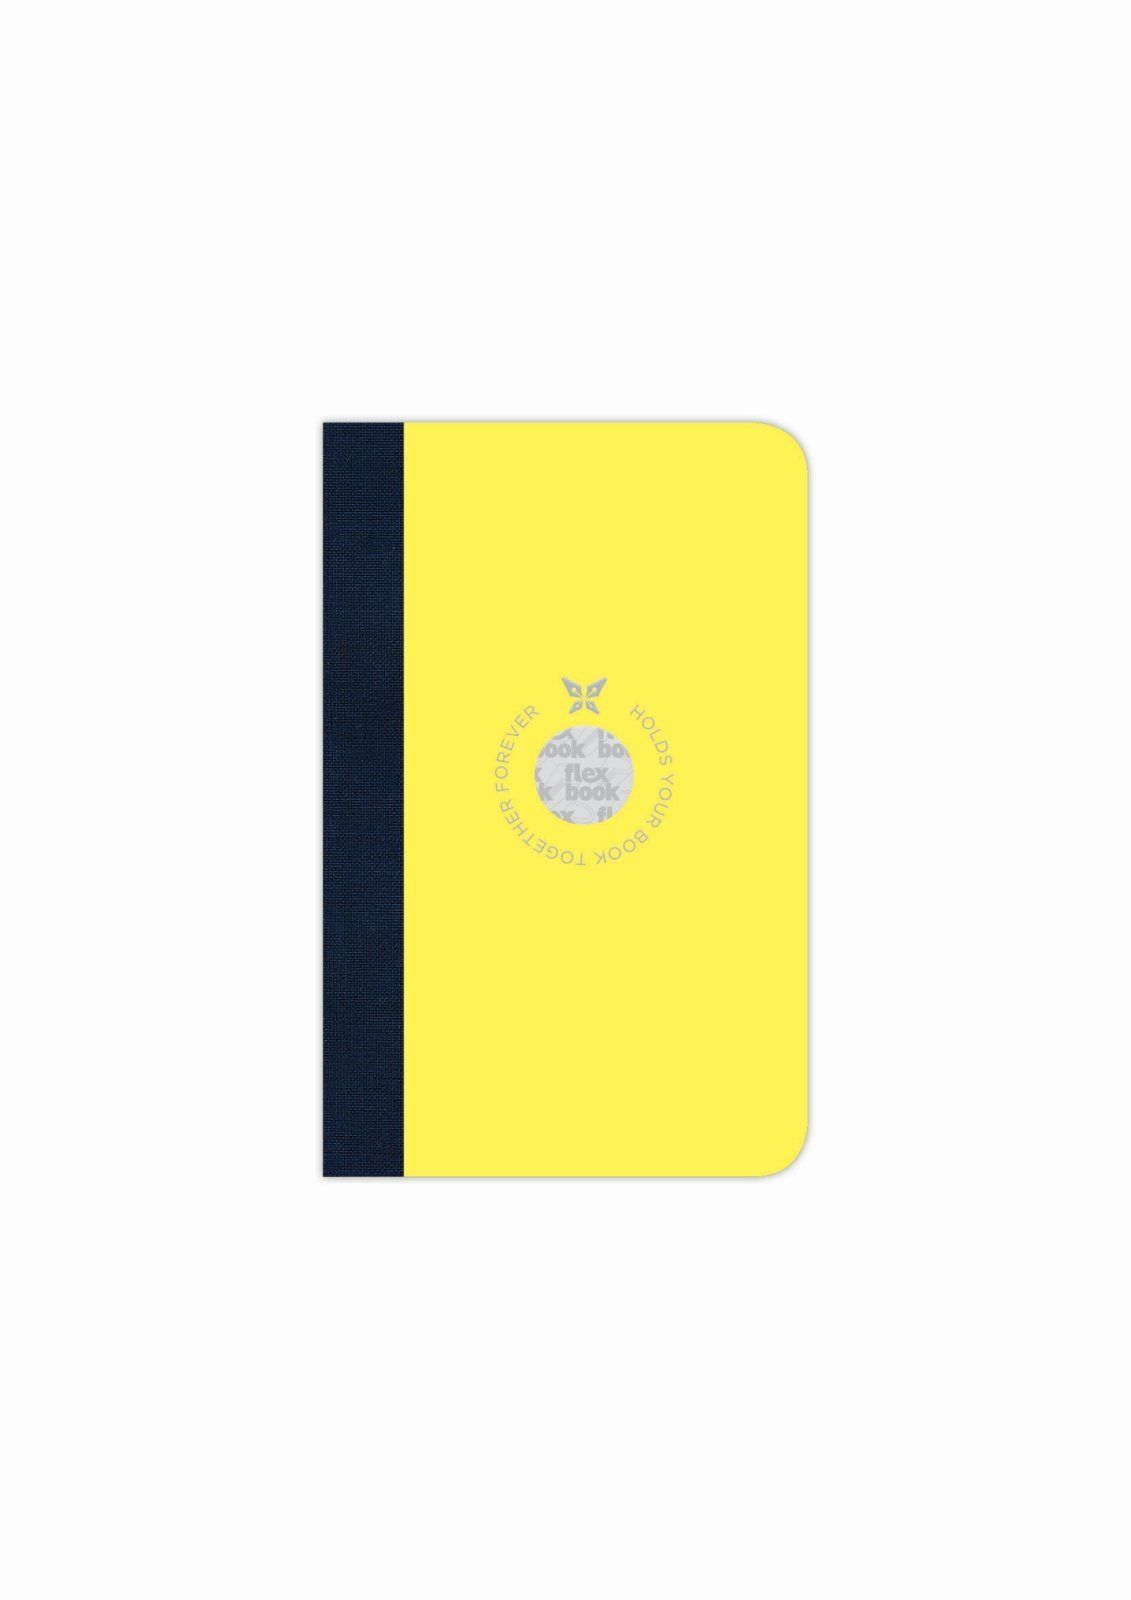 Flexbook Notizbuch Flexbook Smartbook Liniert 160 Seiten Ökopapiereinband viele Größen/Fa Gelb 9*14 cm